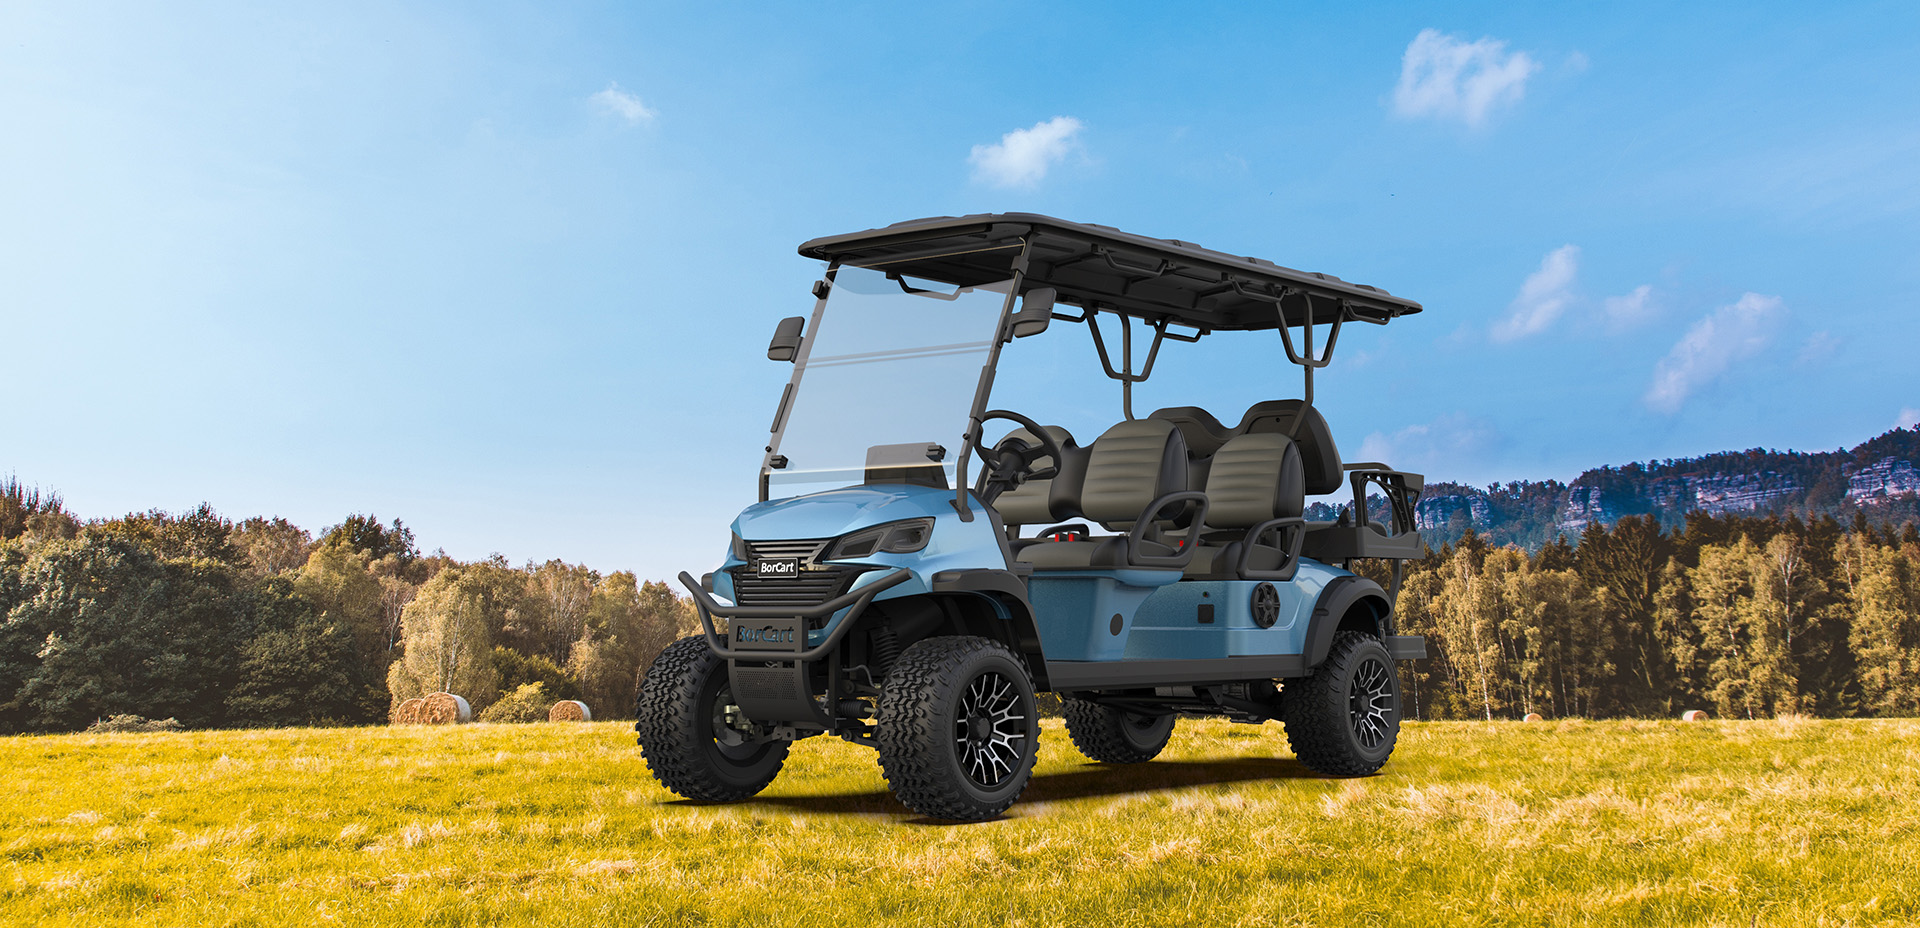 ET terepjáró felnőtt terepjáró ATV kocsi 6 személyes golfkocsi